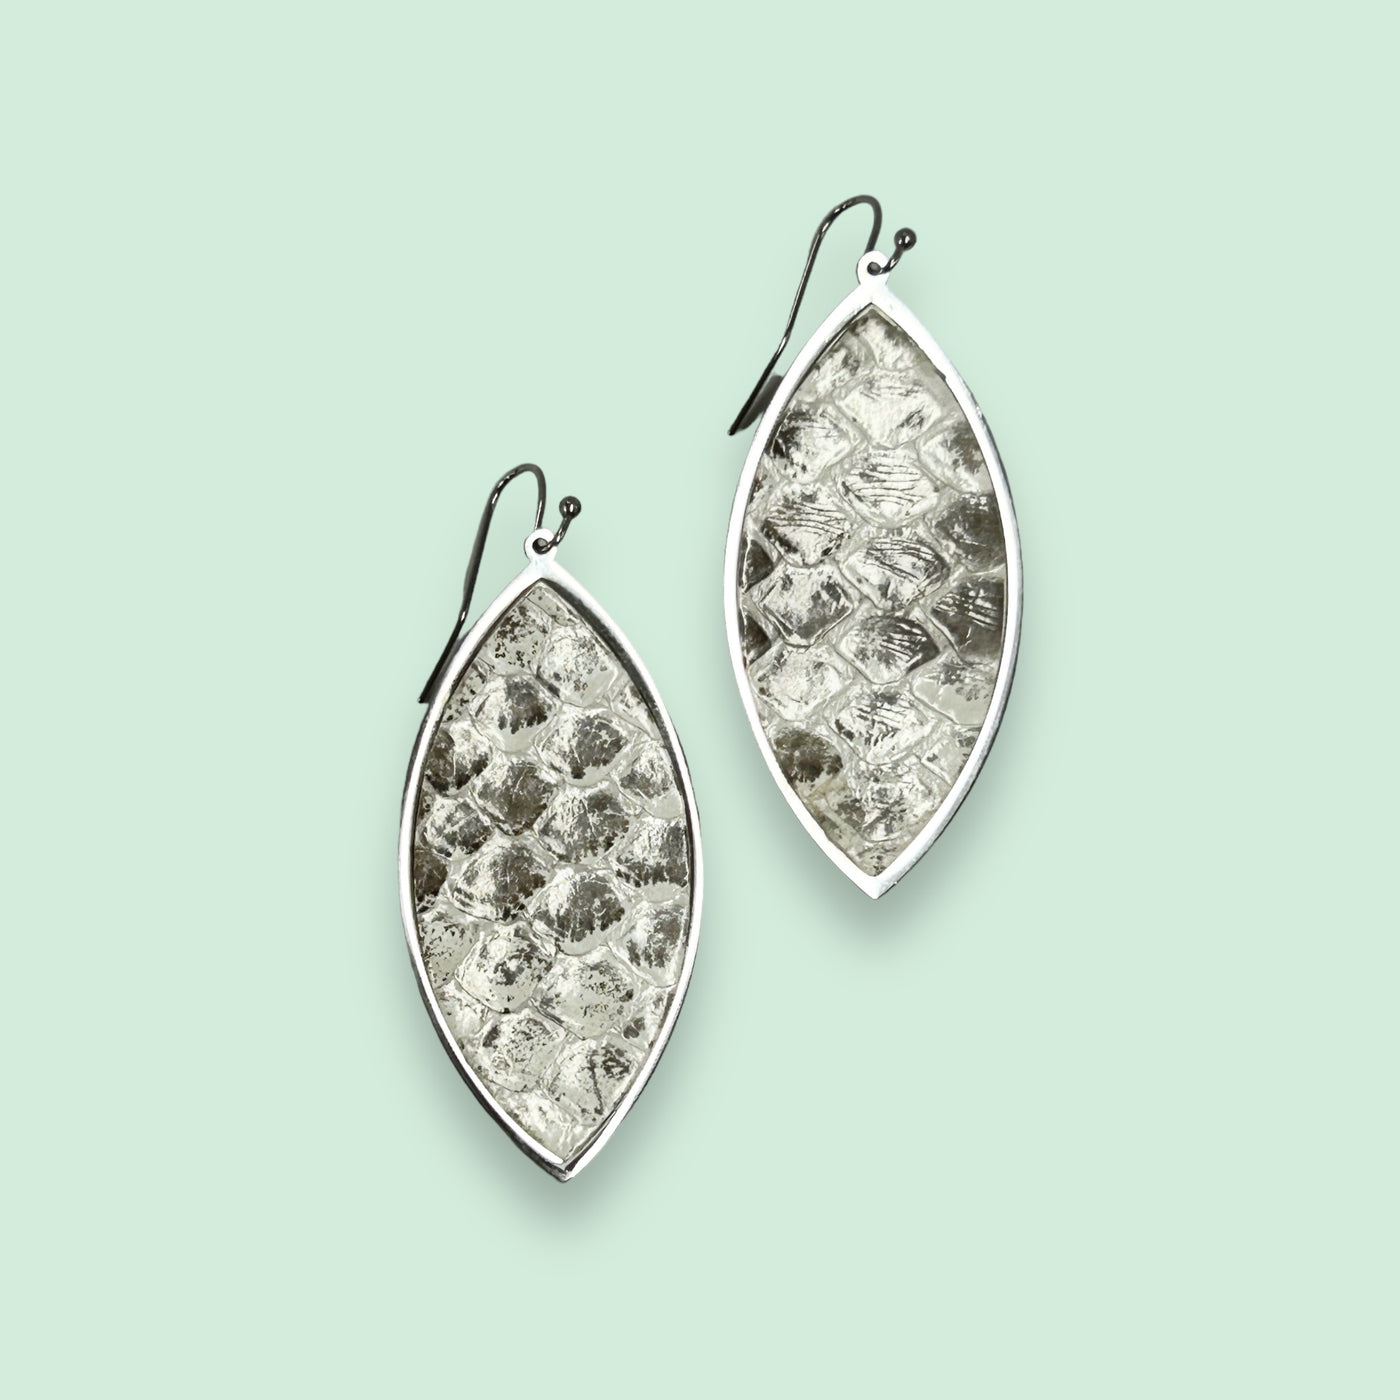 Python Leaf Shaped Earrings - Desert Dream on Silver